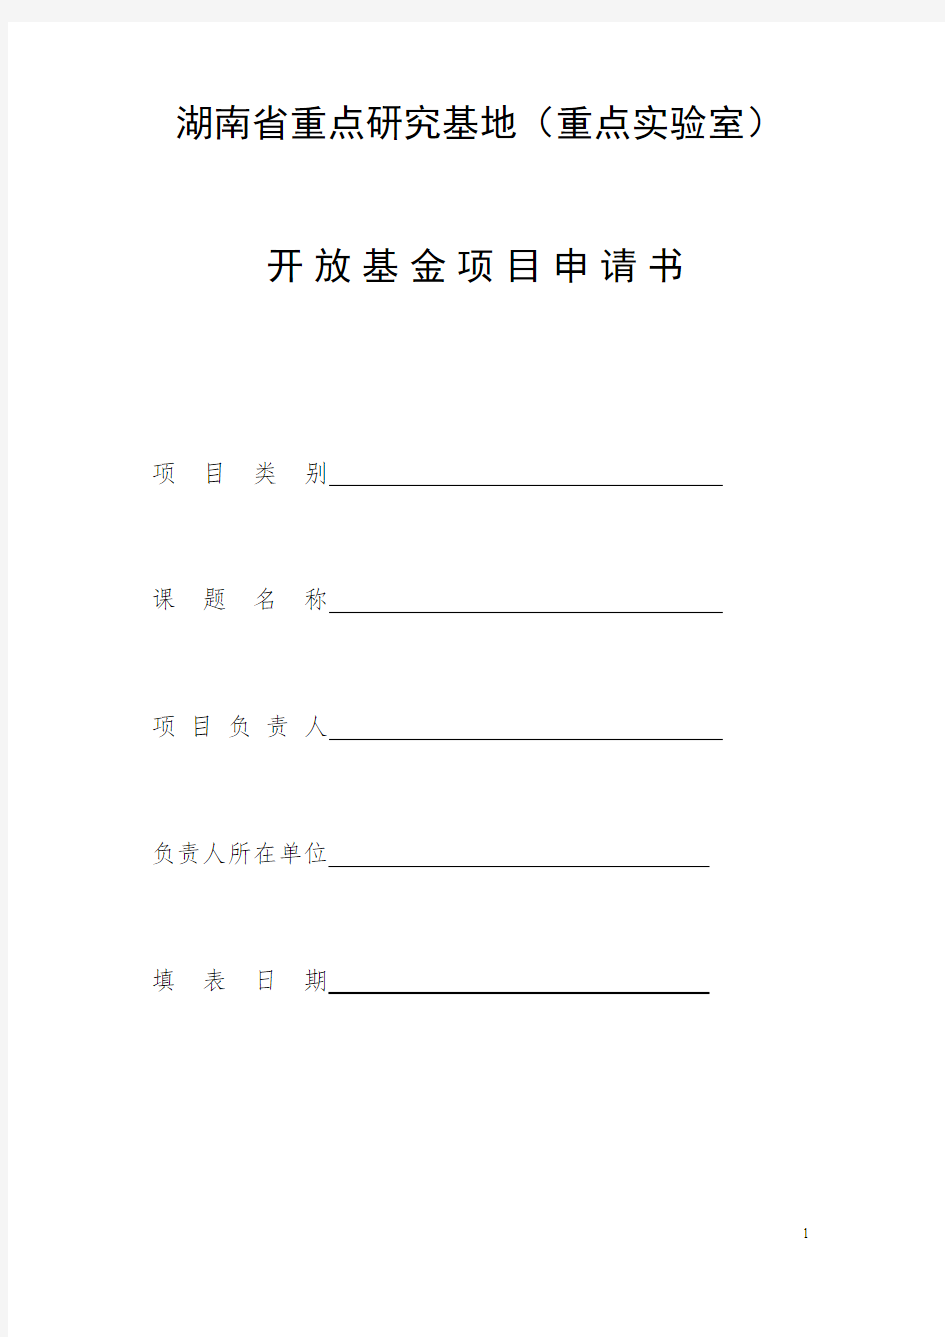 湖南省重点研究基地(重点实验室)开放基金方案申请书